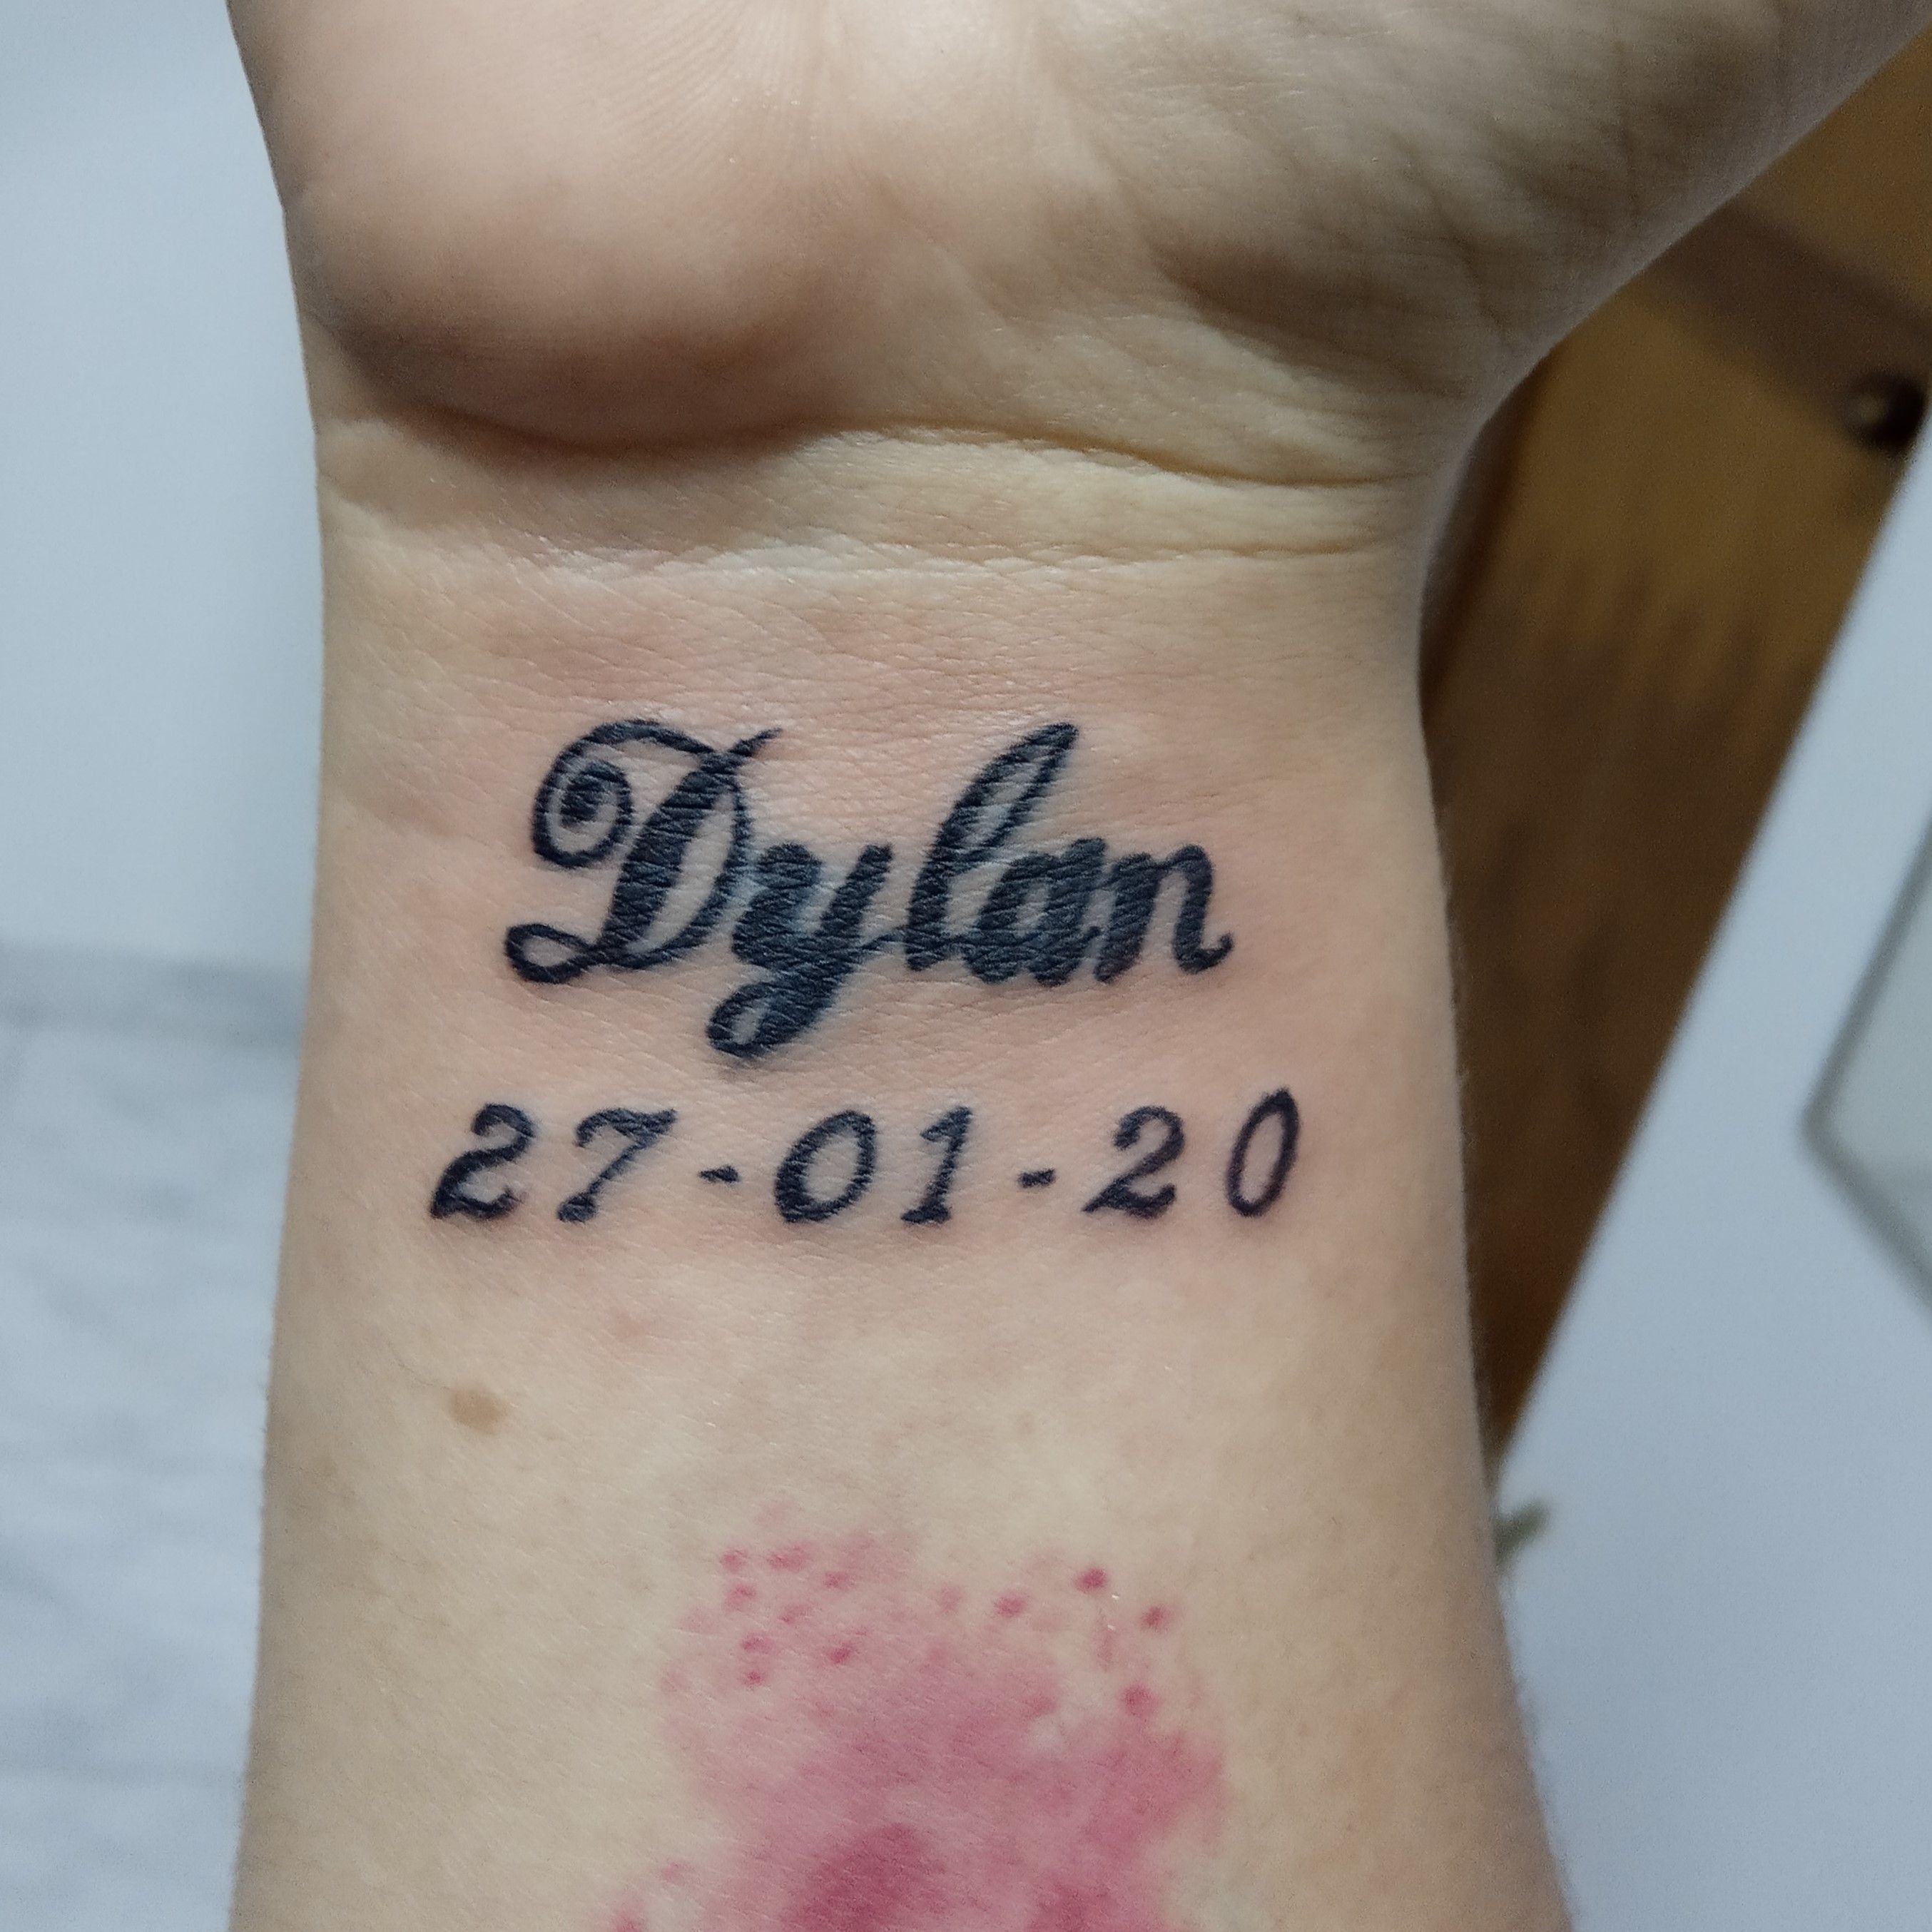 Tatuajes con el nombre dylan en el brazo